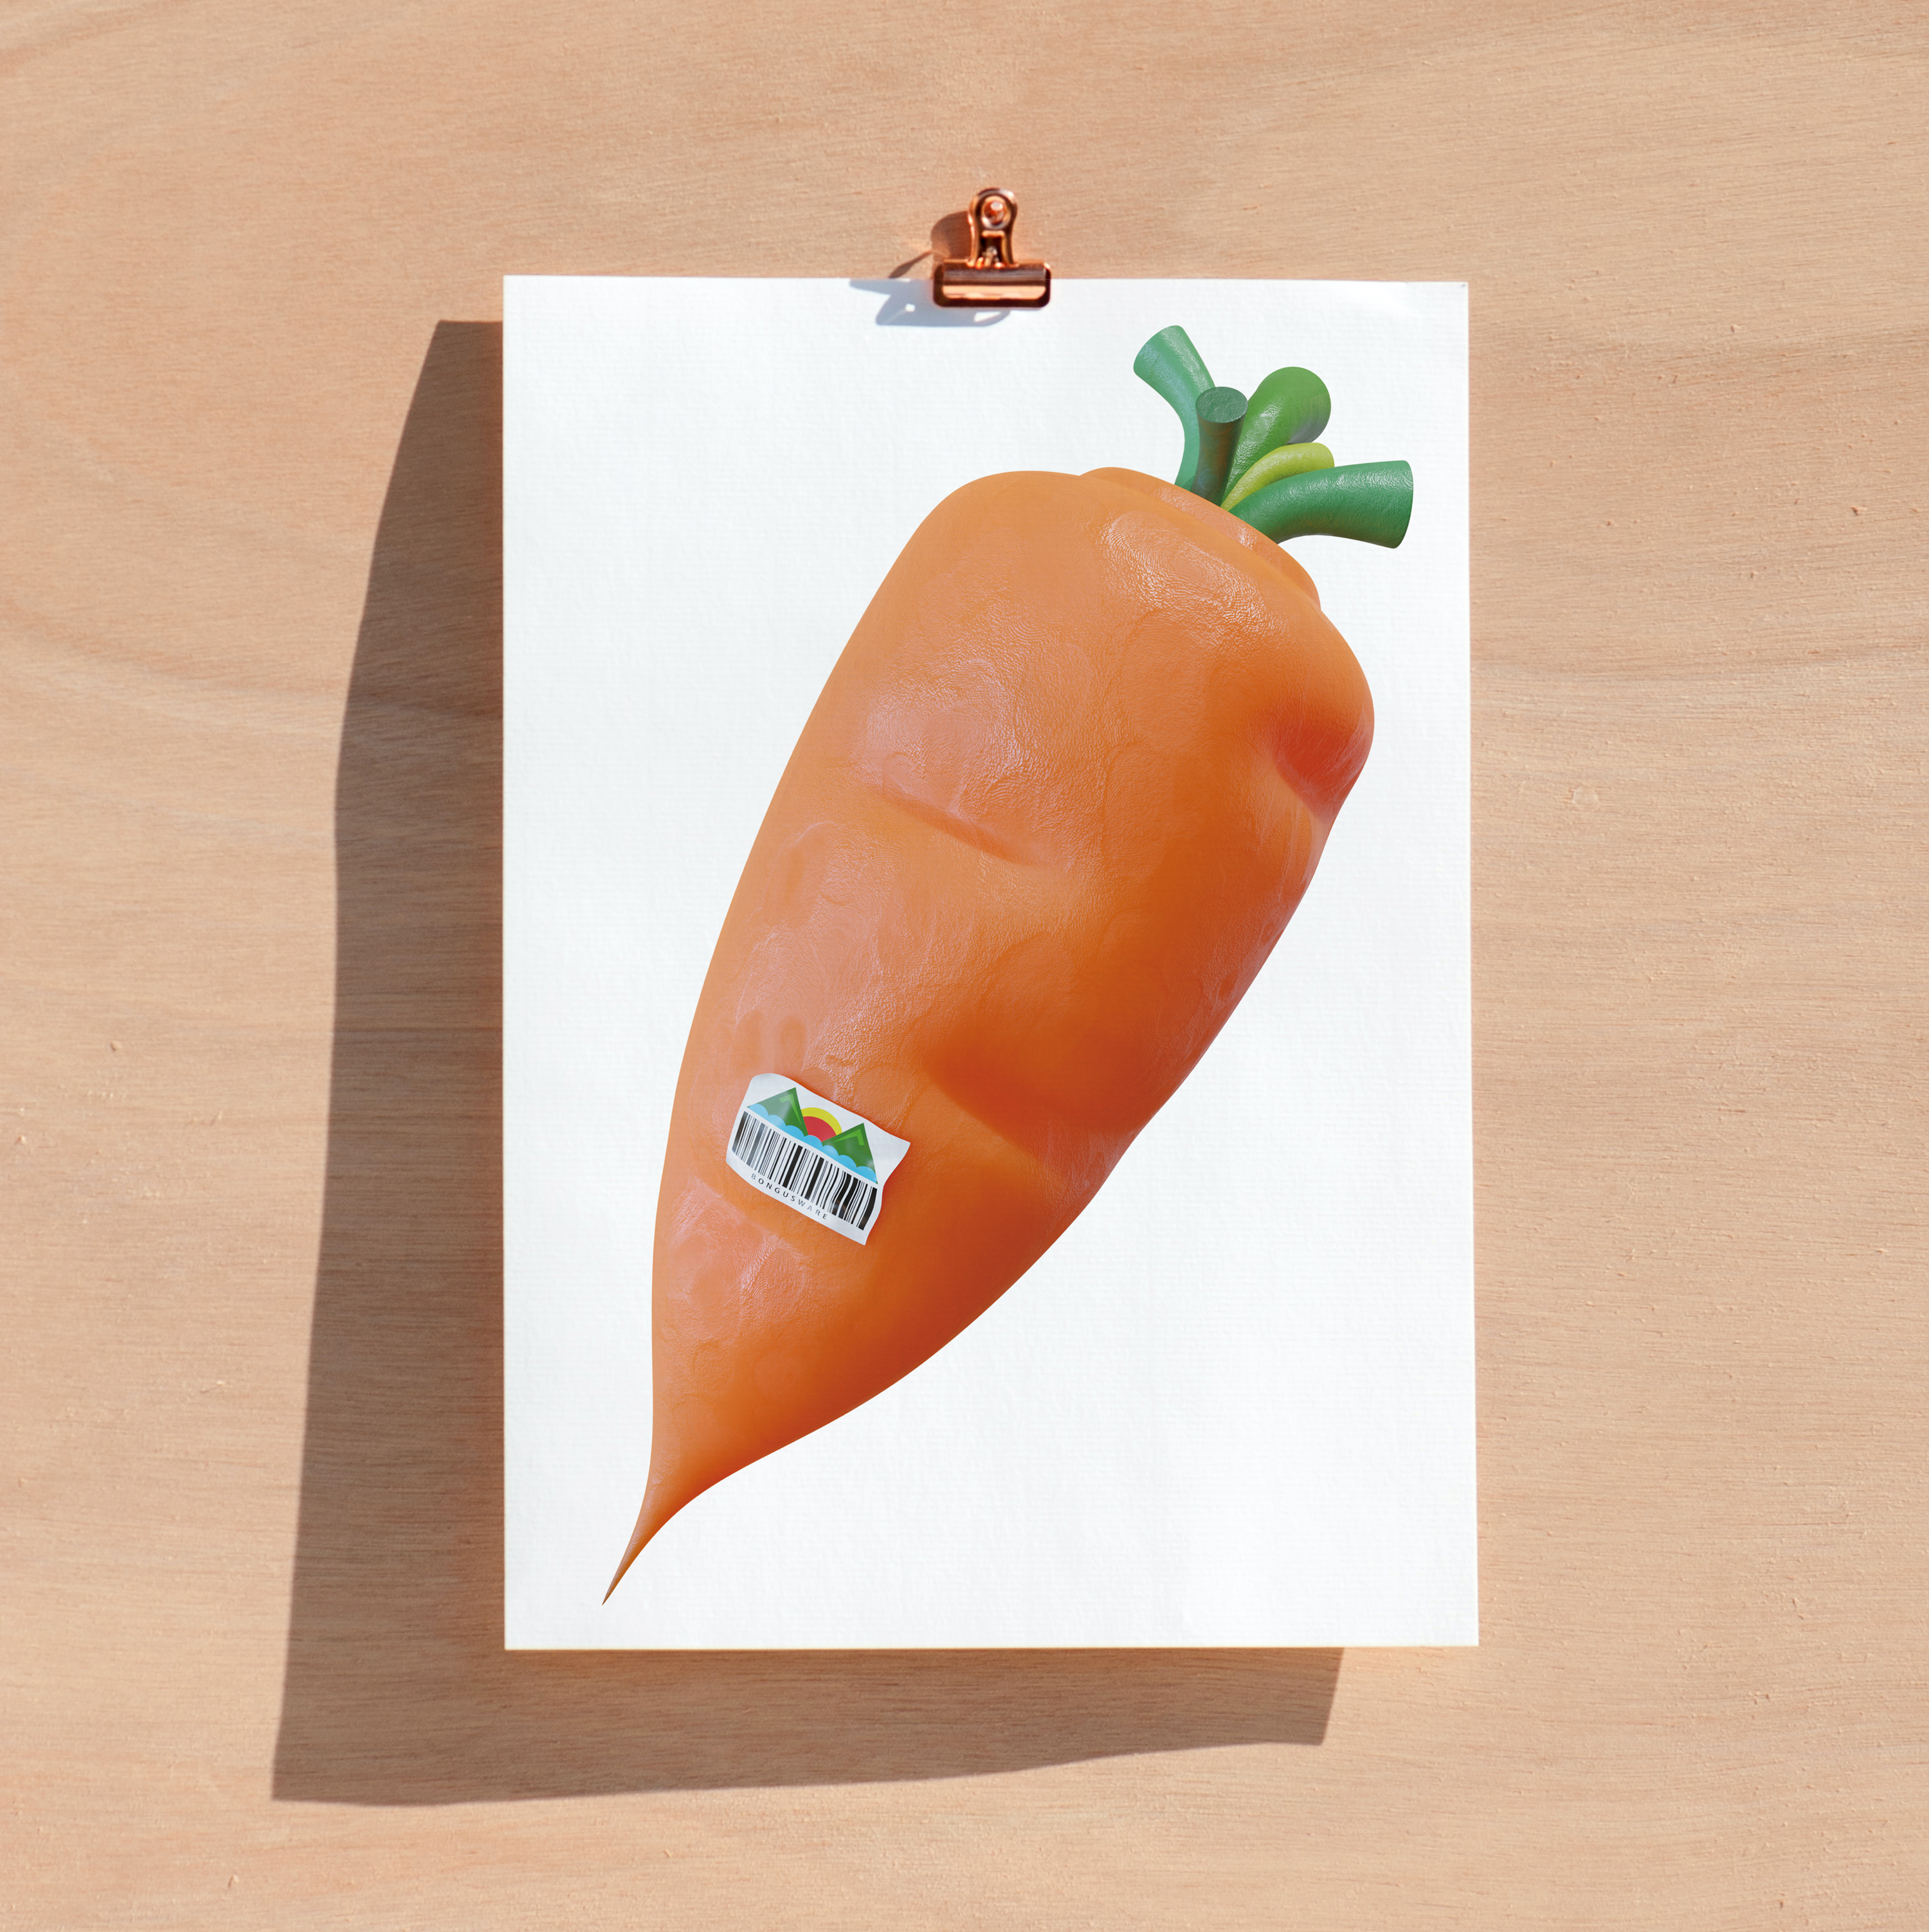 Buy some fruit! #Carrot